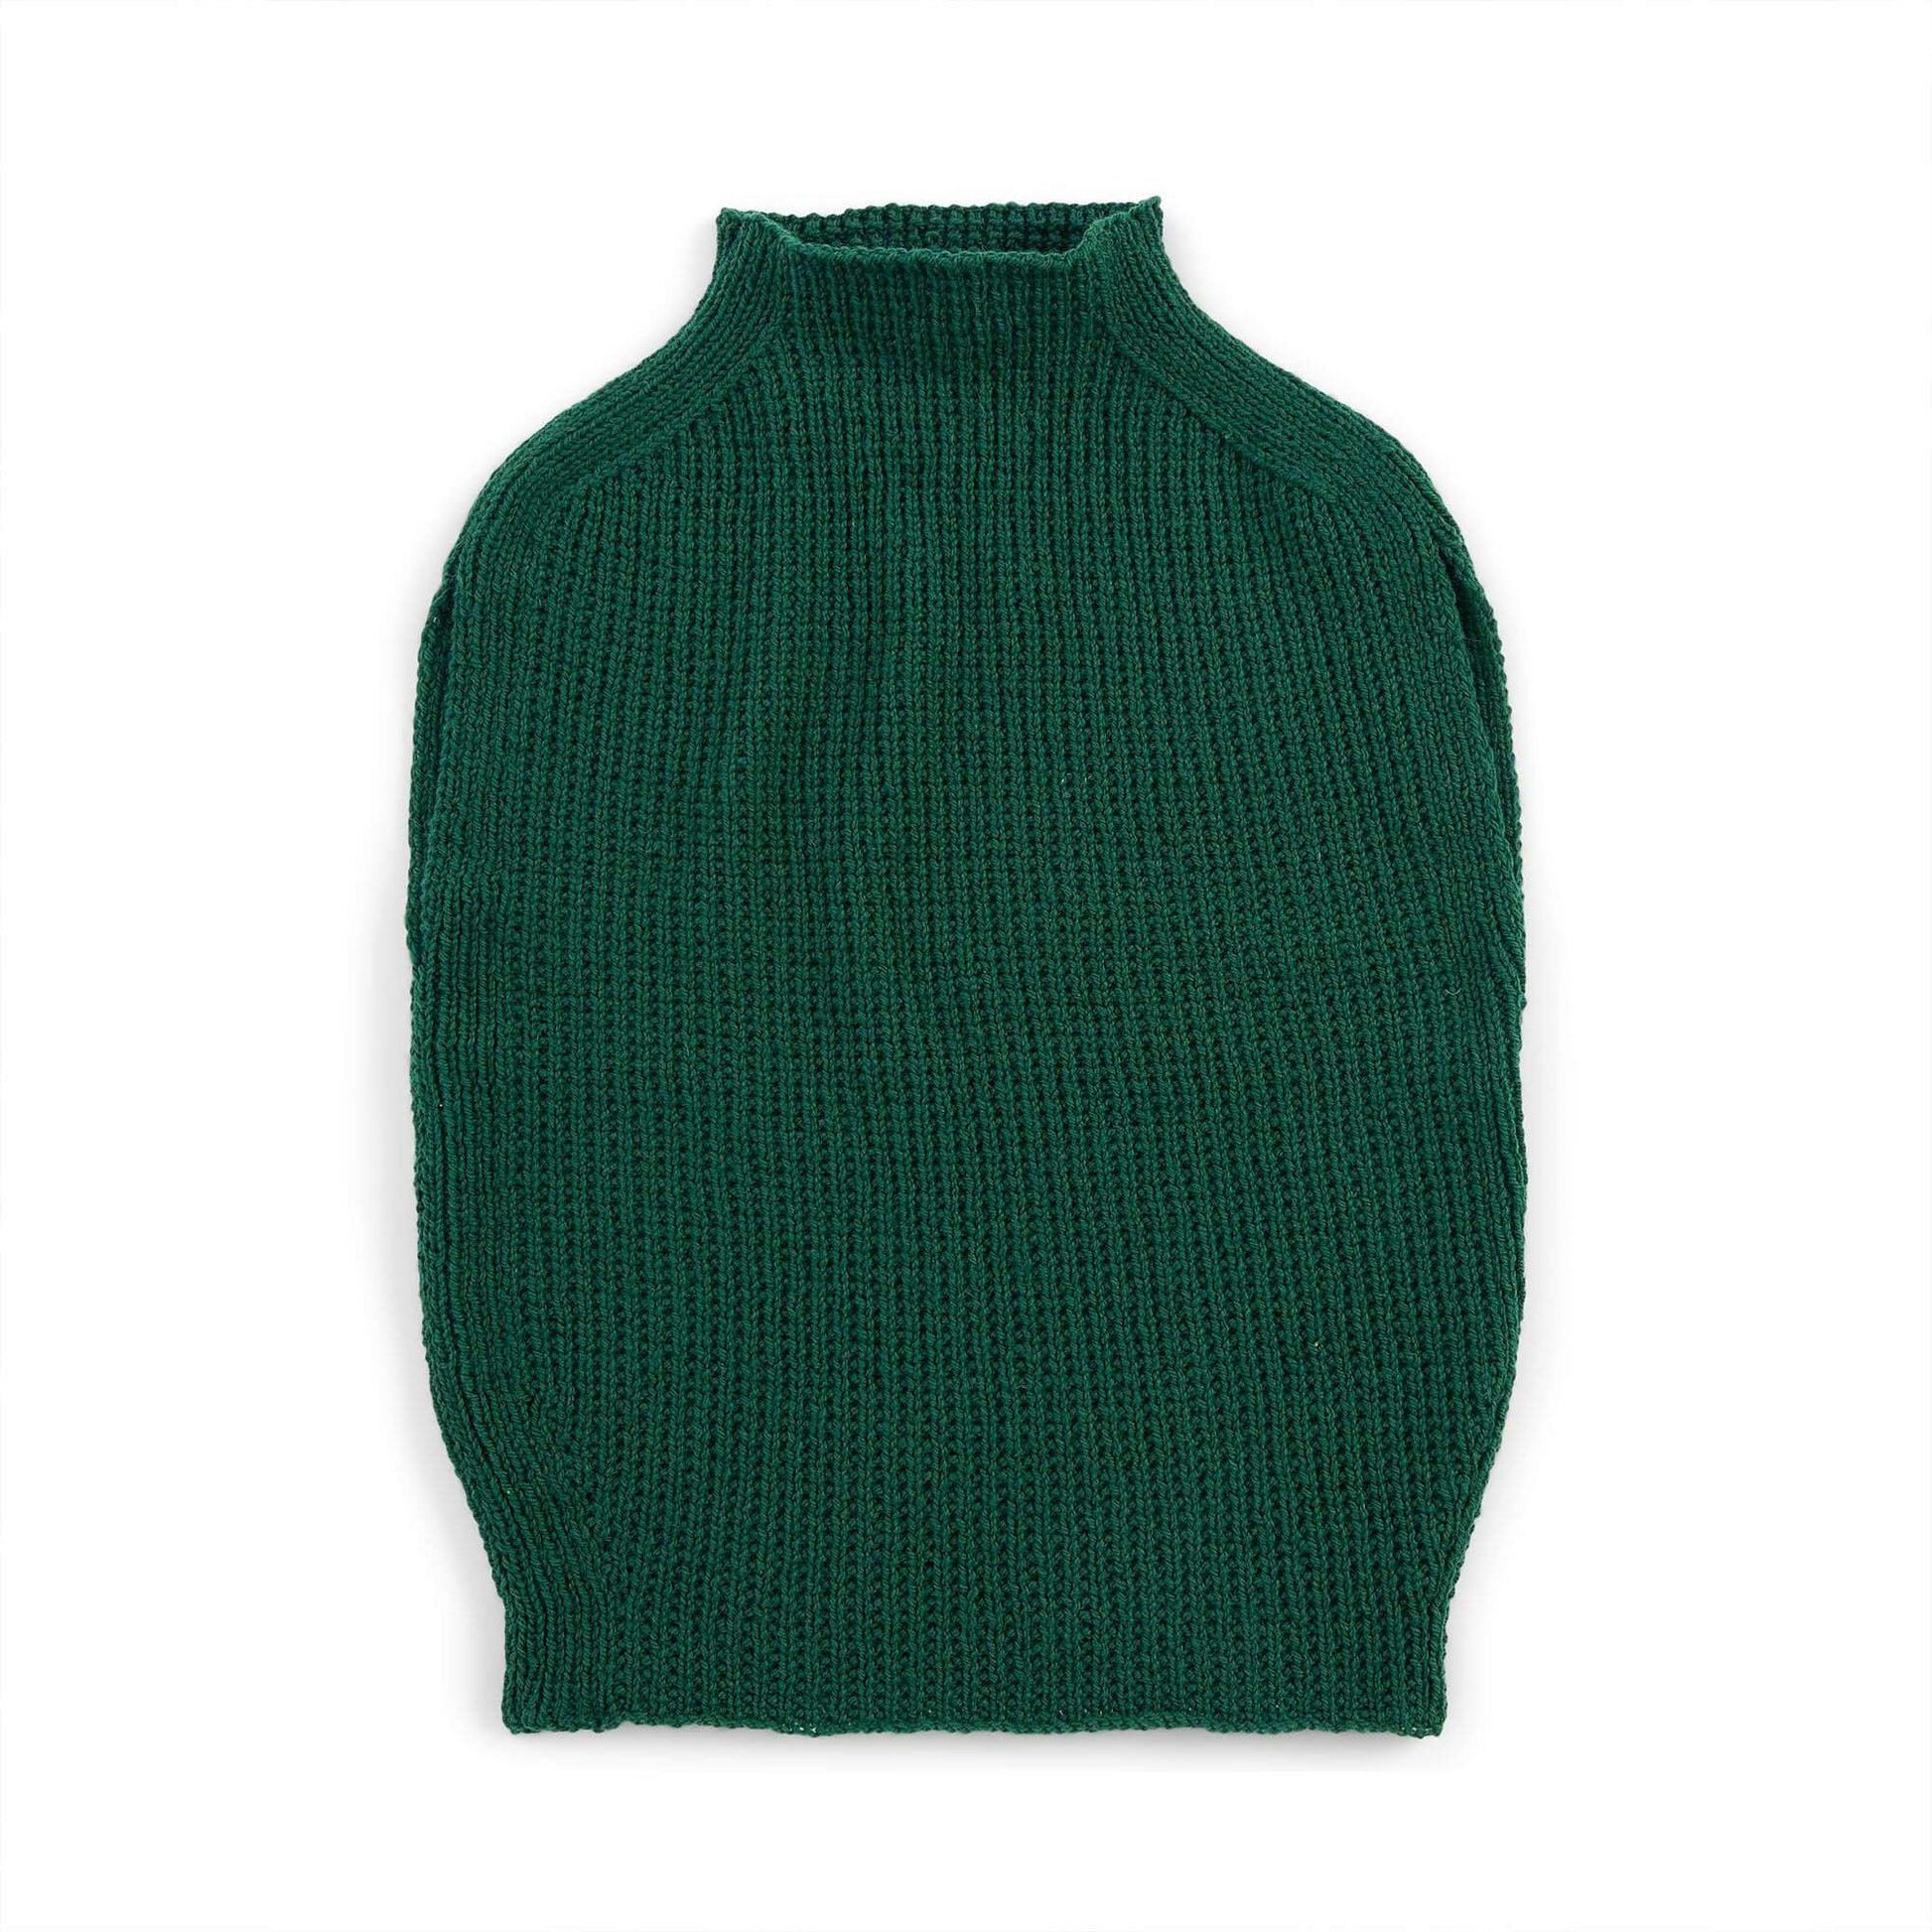 Free Patons Rib Knit Tunic Pattern